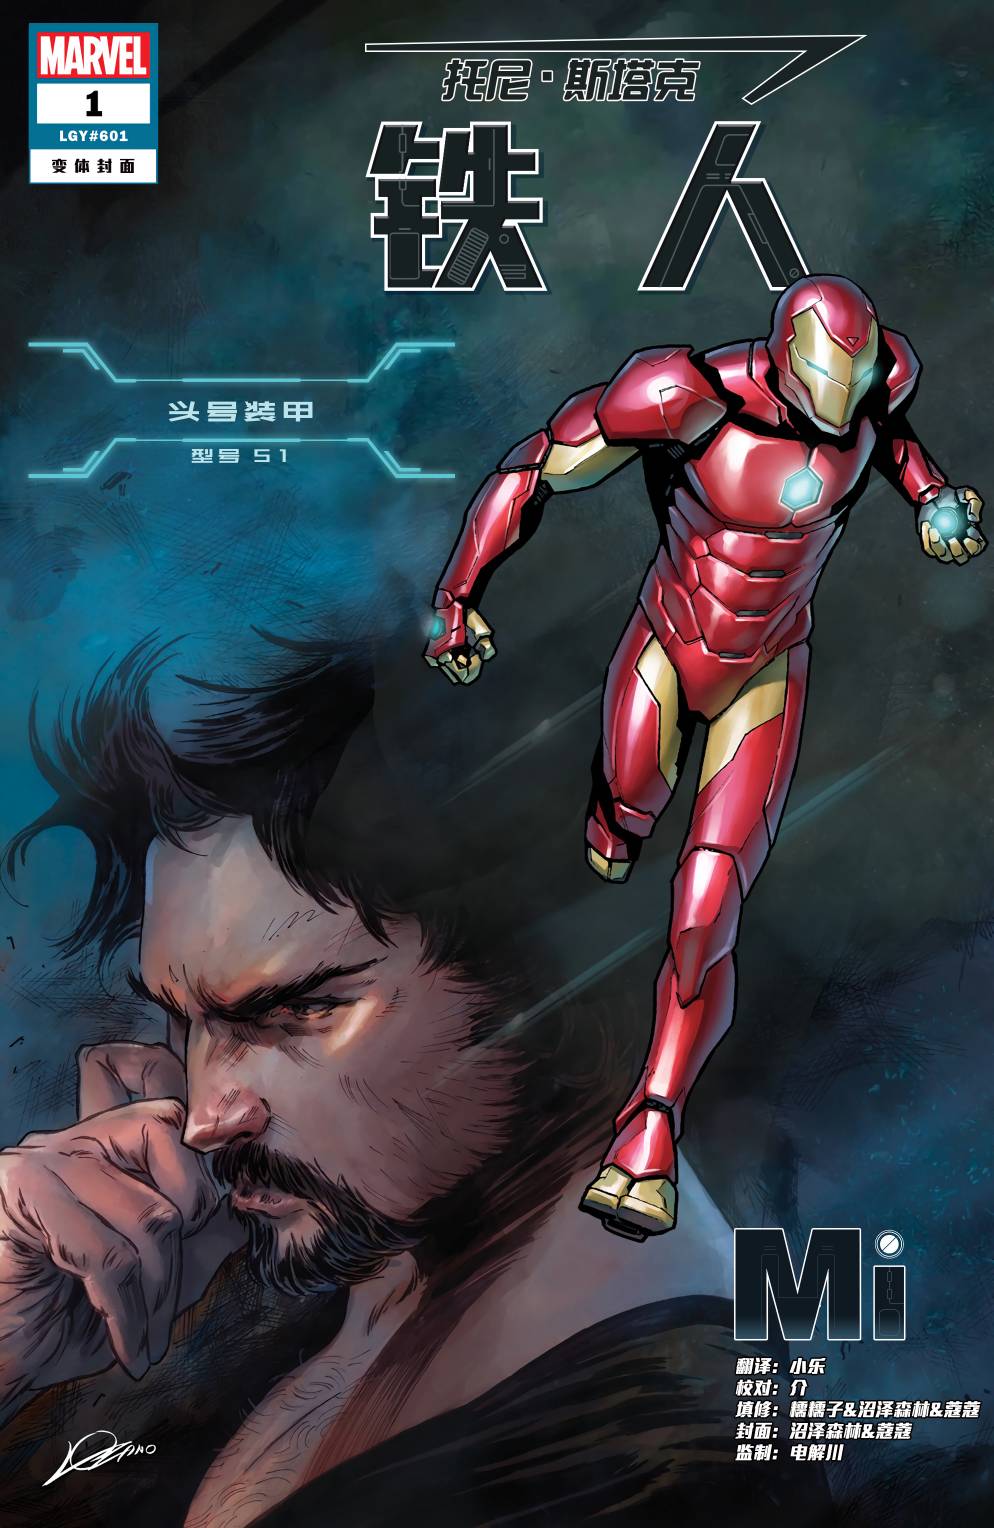 生活 日常 分享一些好看的钢铁侠漫画封面《托尼·斯塔克:钢铁侠》